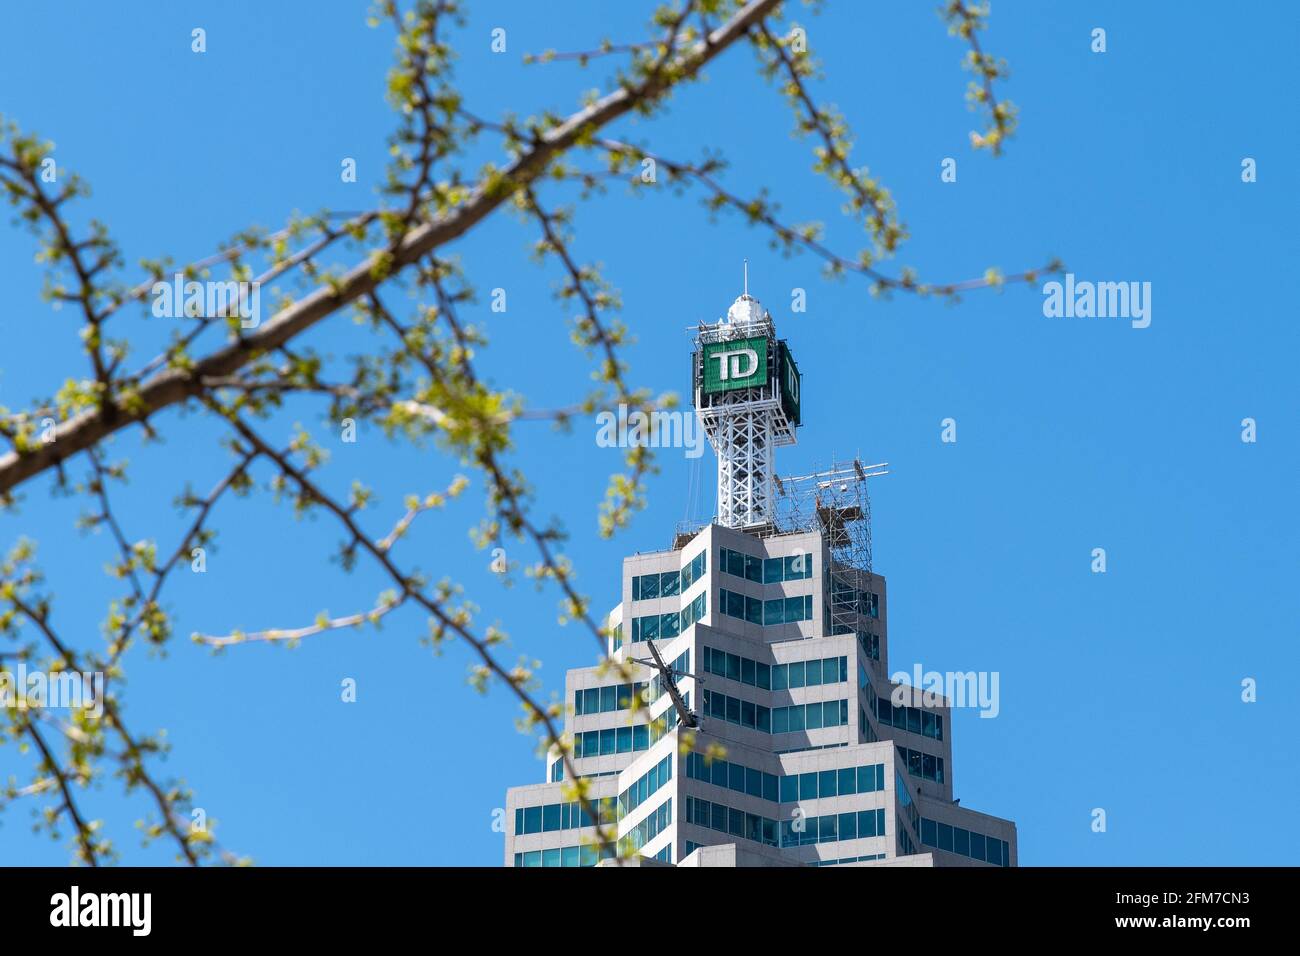 Die TD Bank unterzeichnet zu Beginn des Frühlings einen der Brookfield Place Tower, Toronto, Kanada Stockfoto